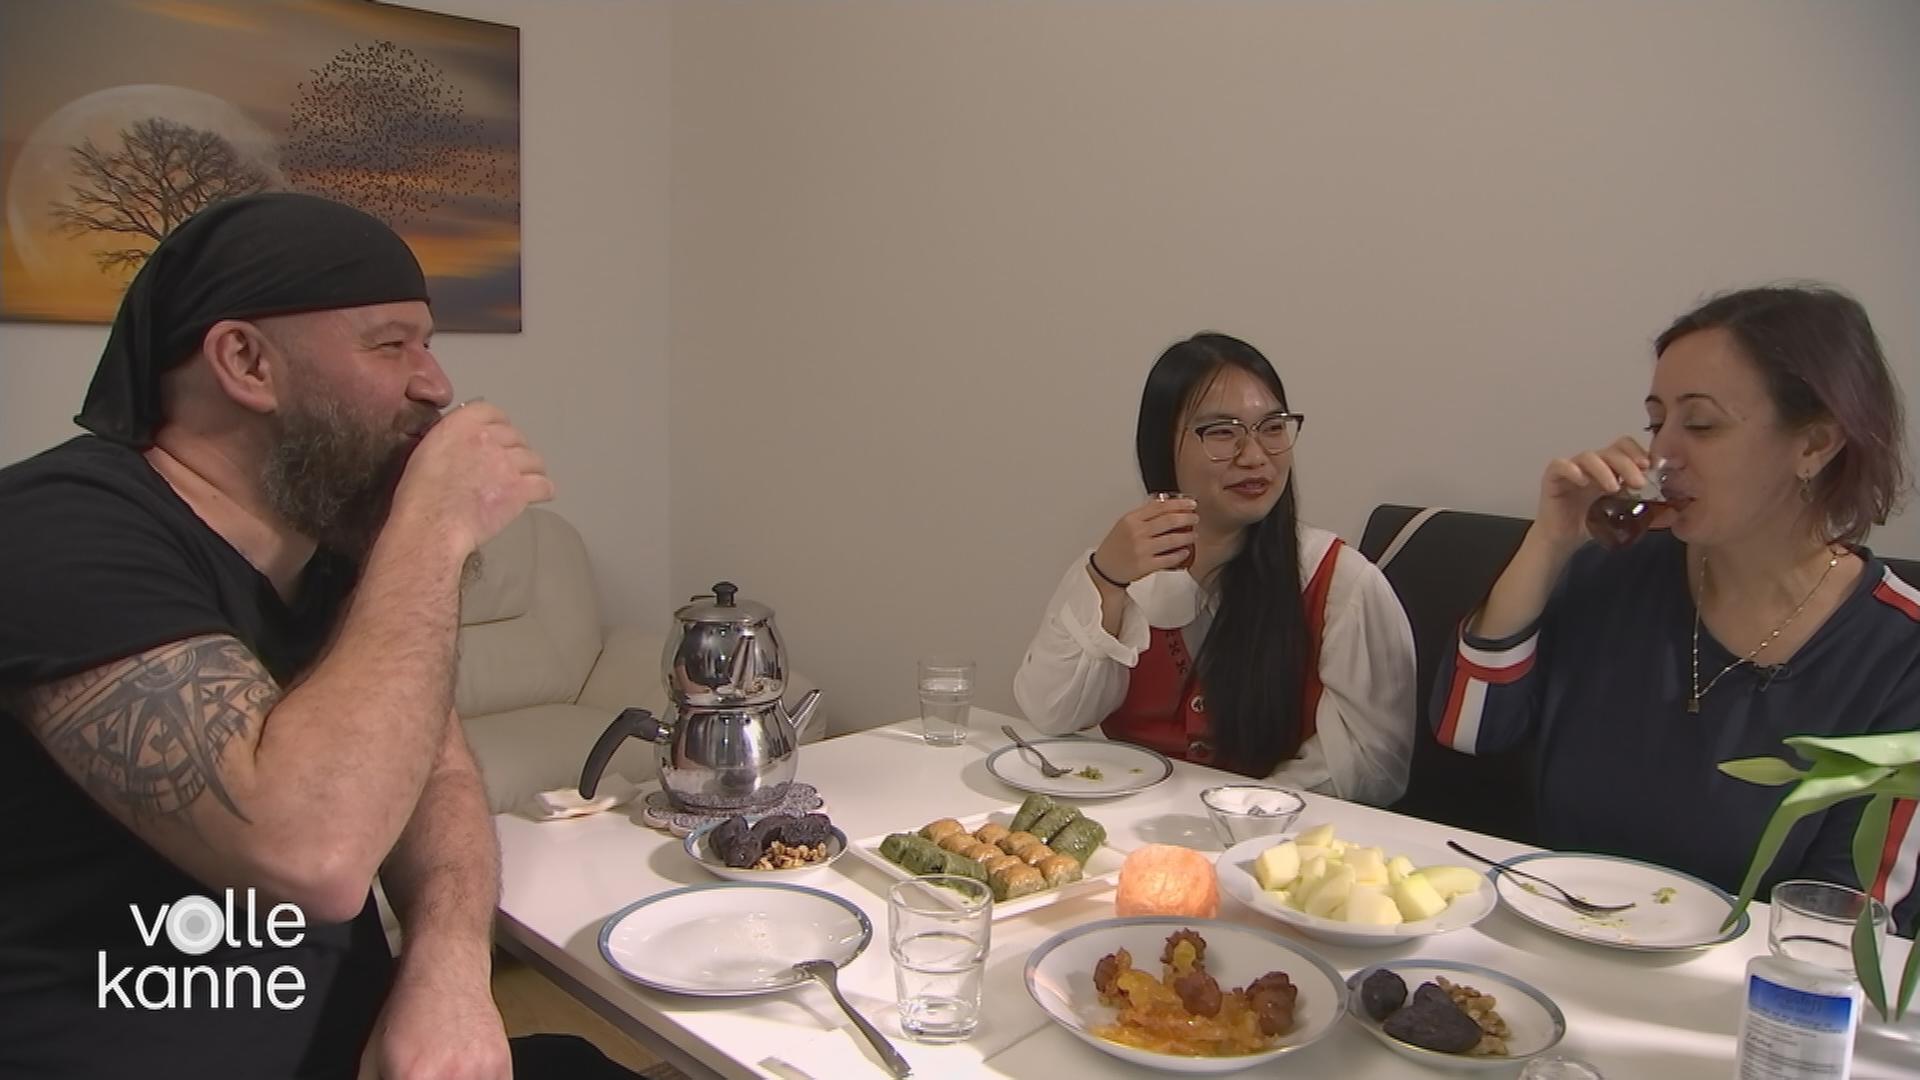 Drei Personen sitzen am Tisch und essen